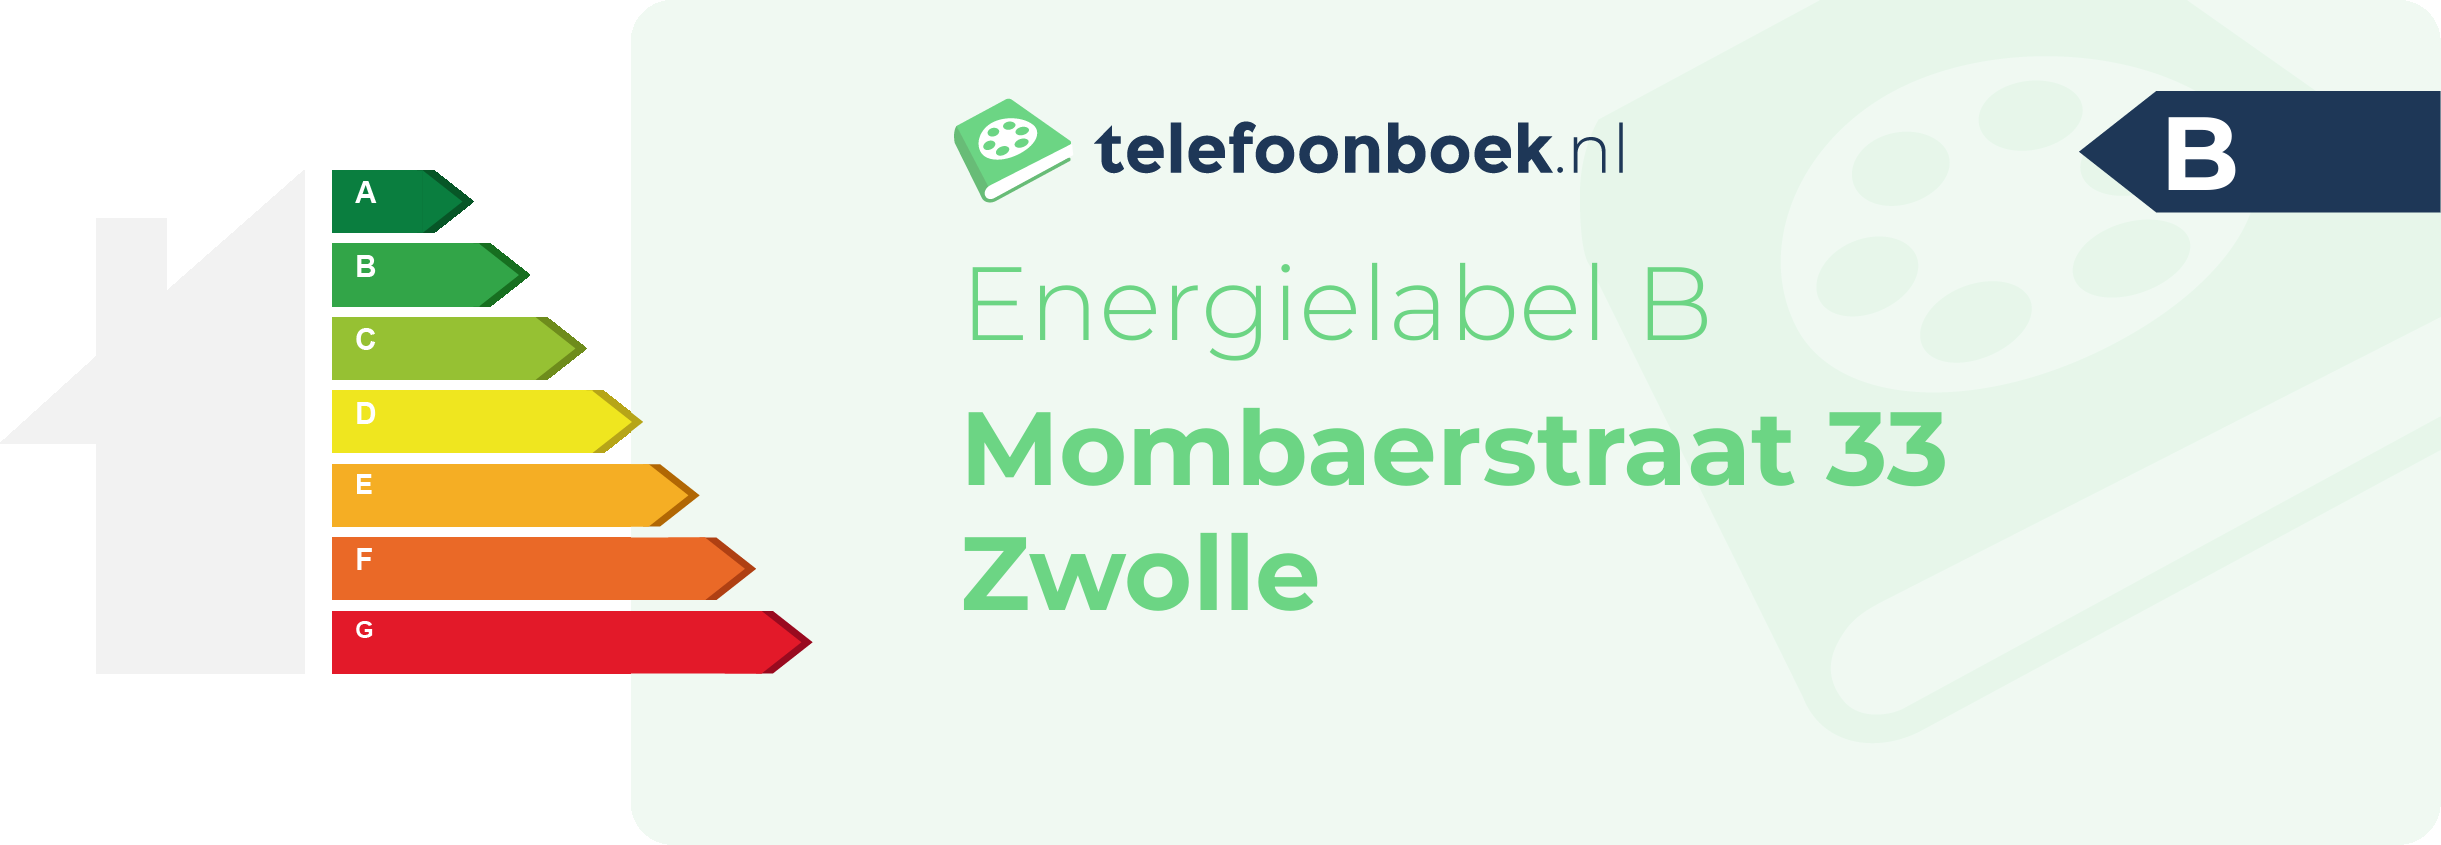 Energielabel Mombaerstraat 33 Zwolle